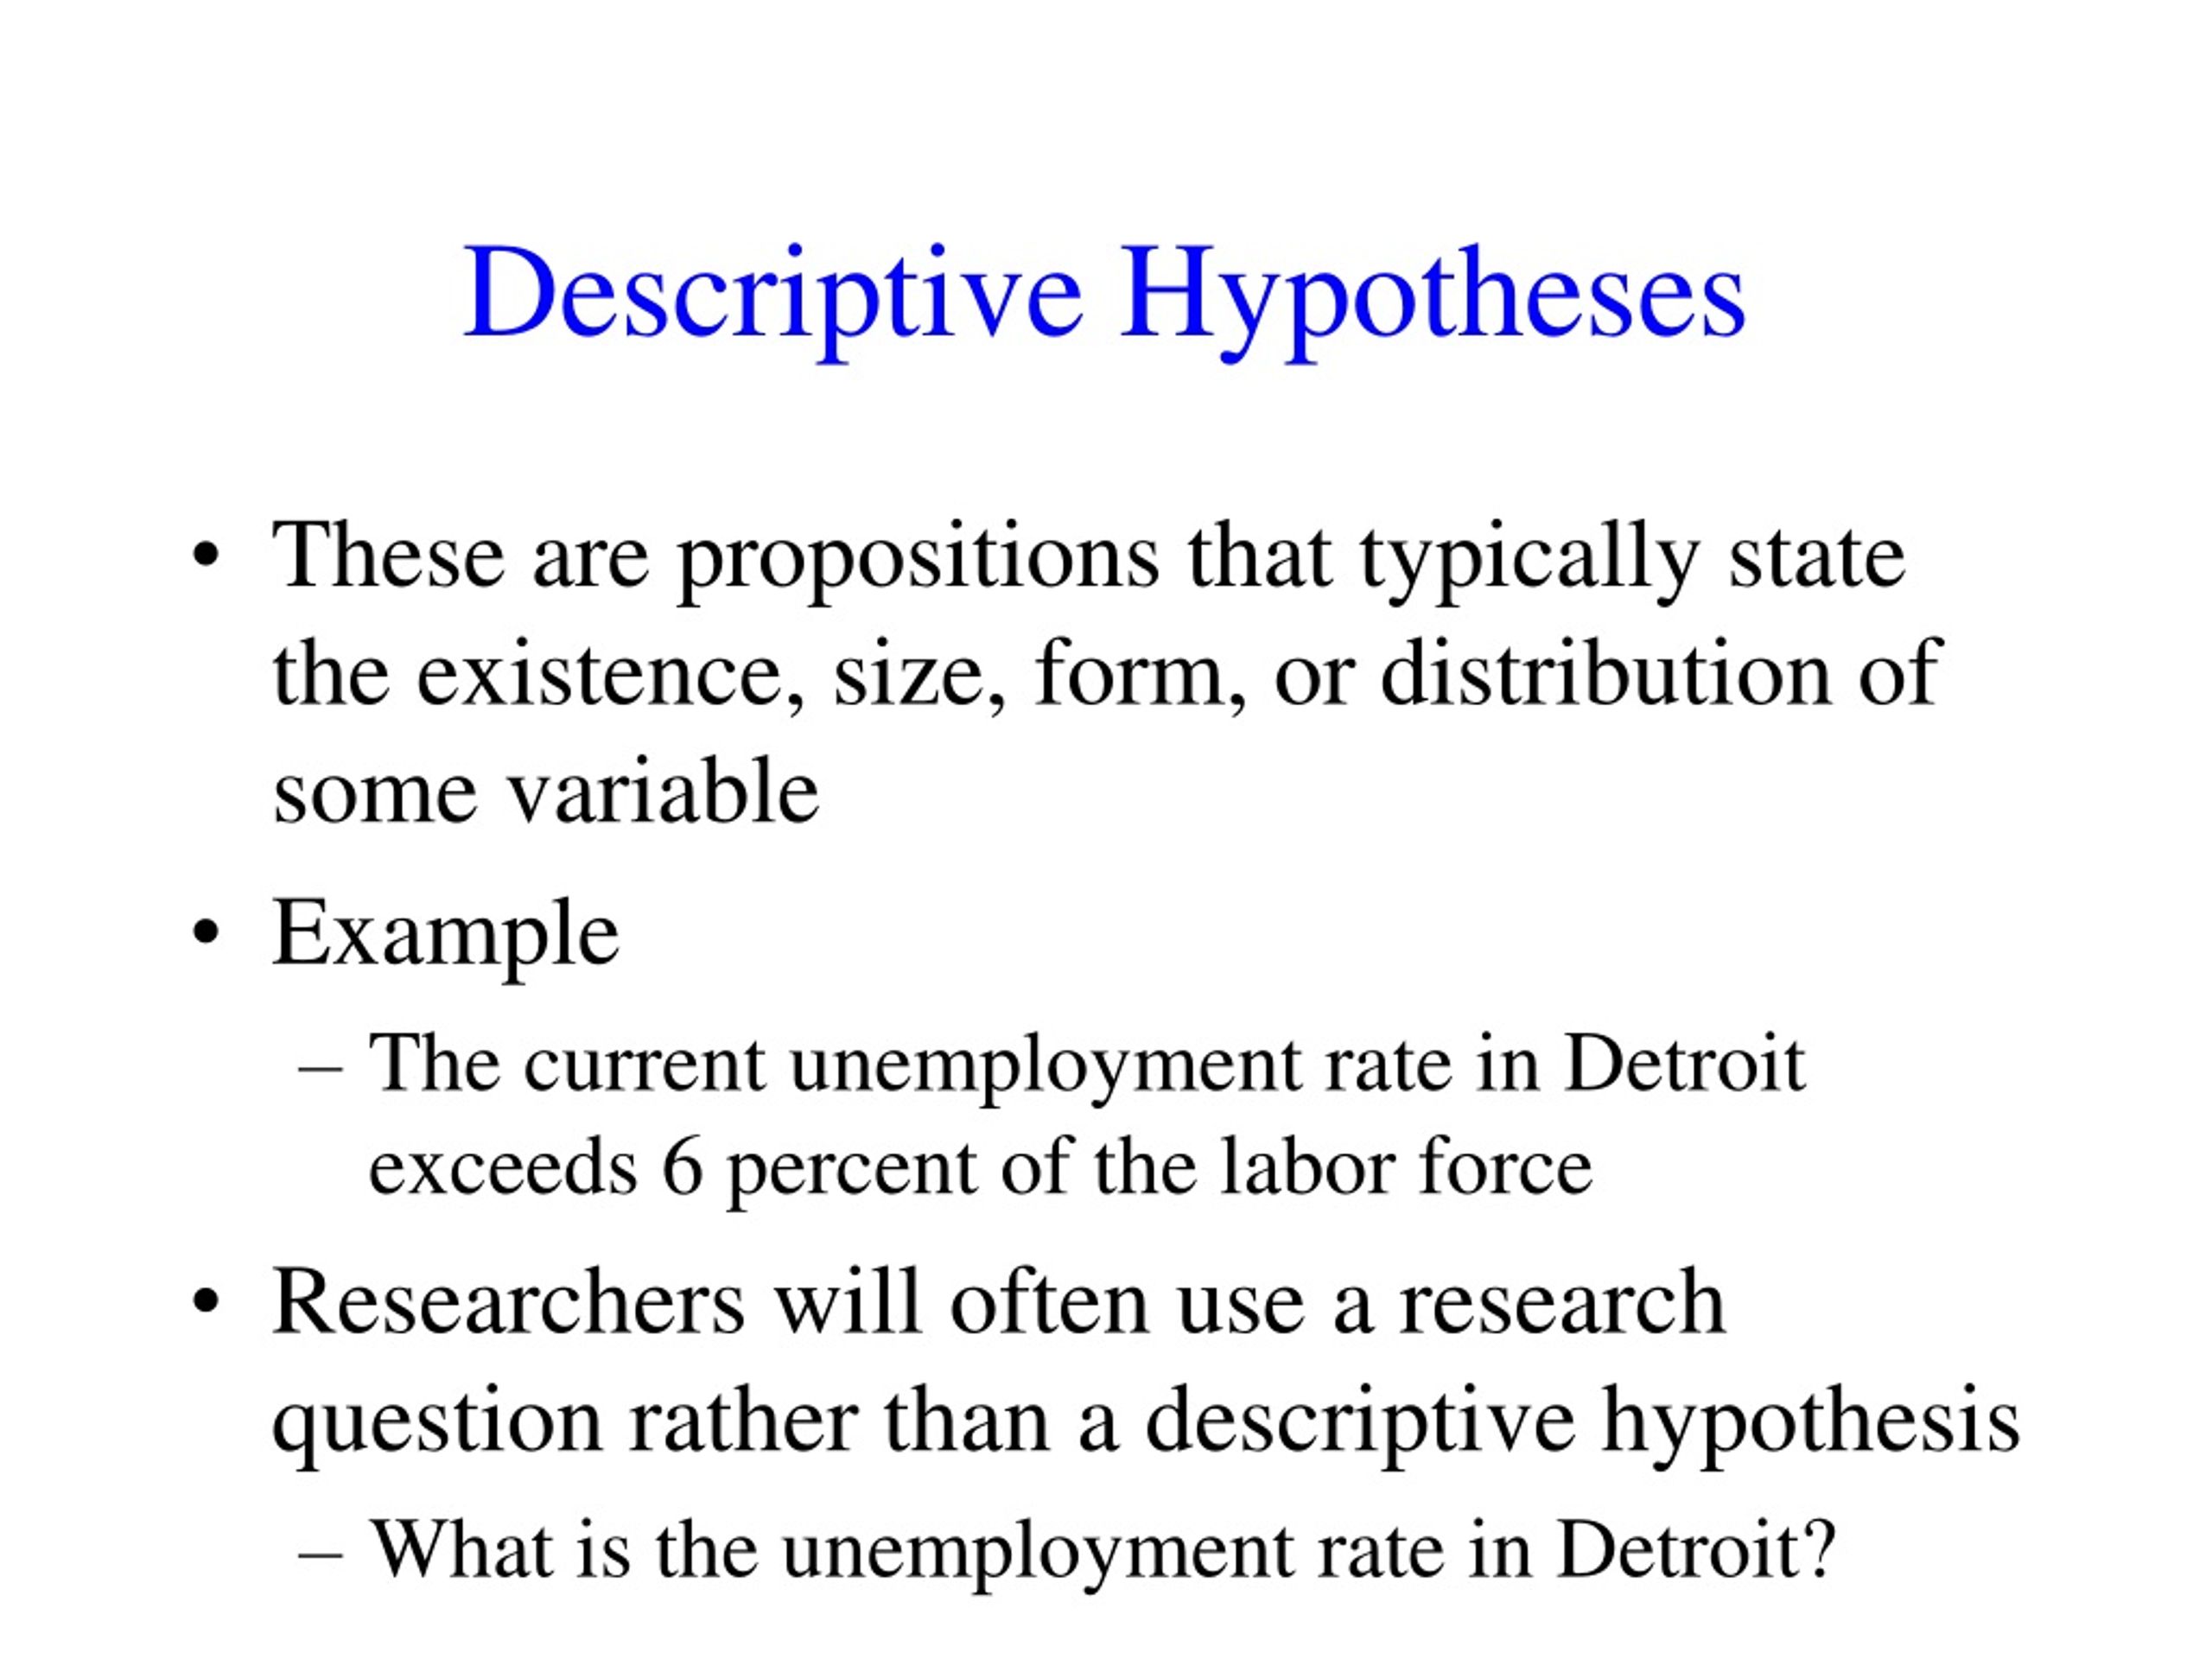 hypothesis is descriptive